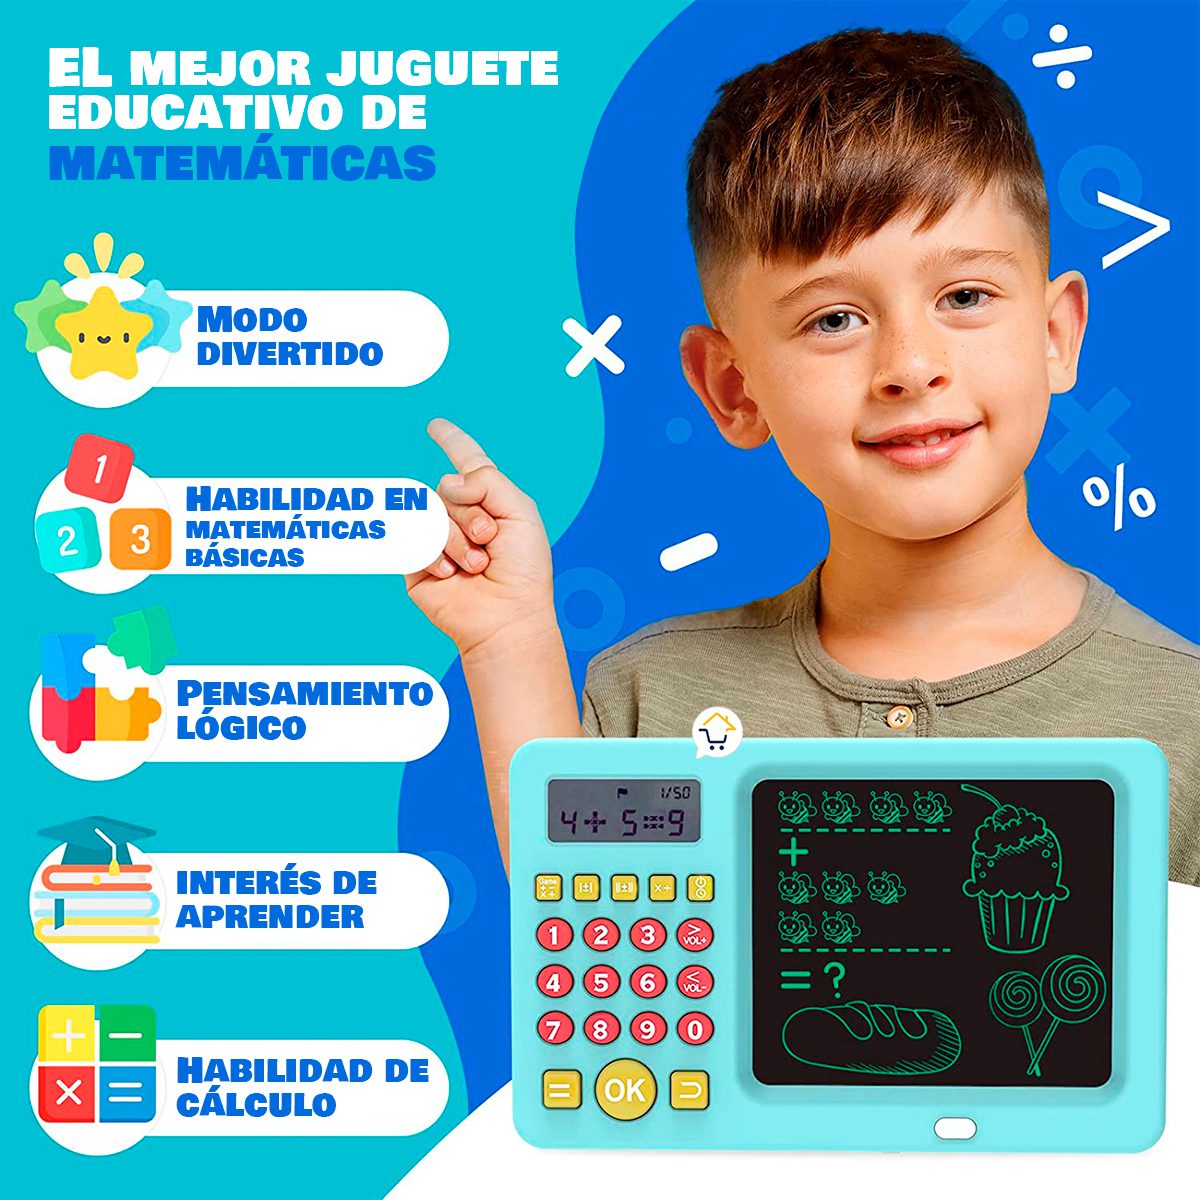 Calculadora Educativa De Aprendizaje Matemáticas 2 en 1 Tablero Mágico DJU158C